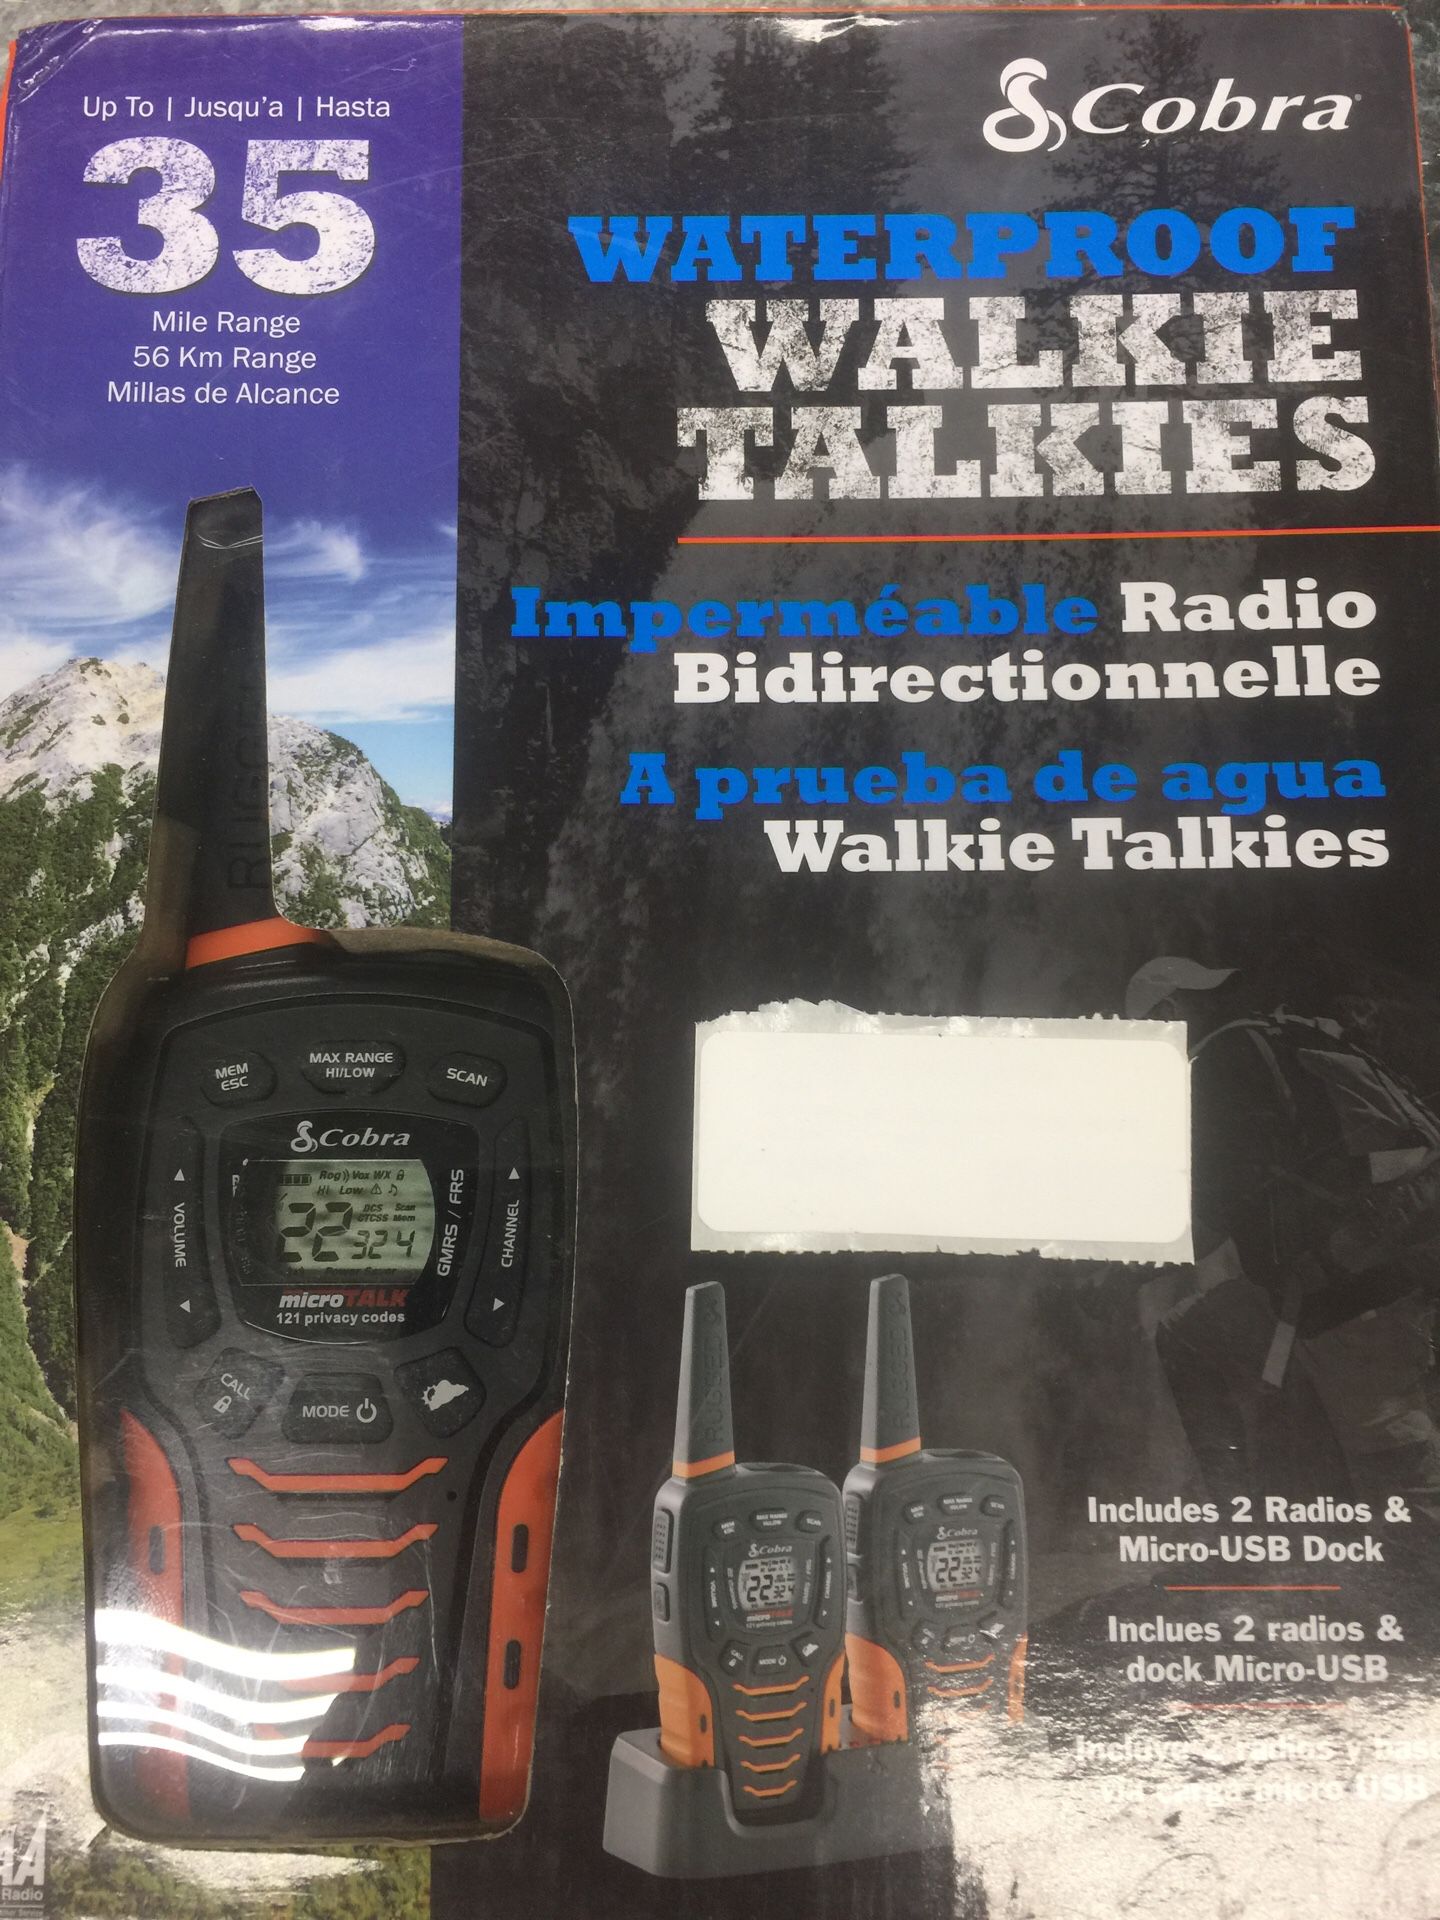 Cobra 2 way walkie talkies 35 mile range